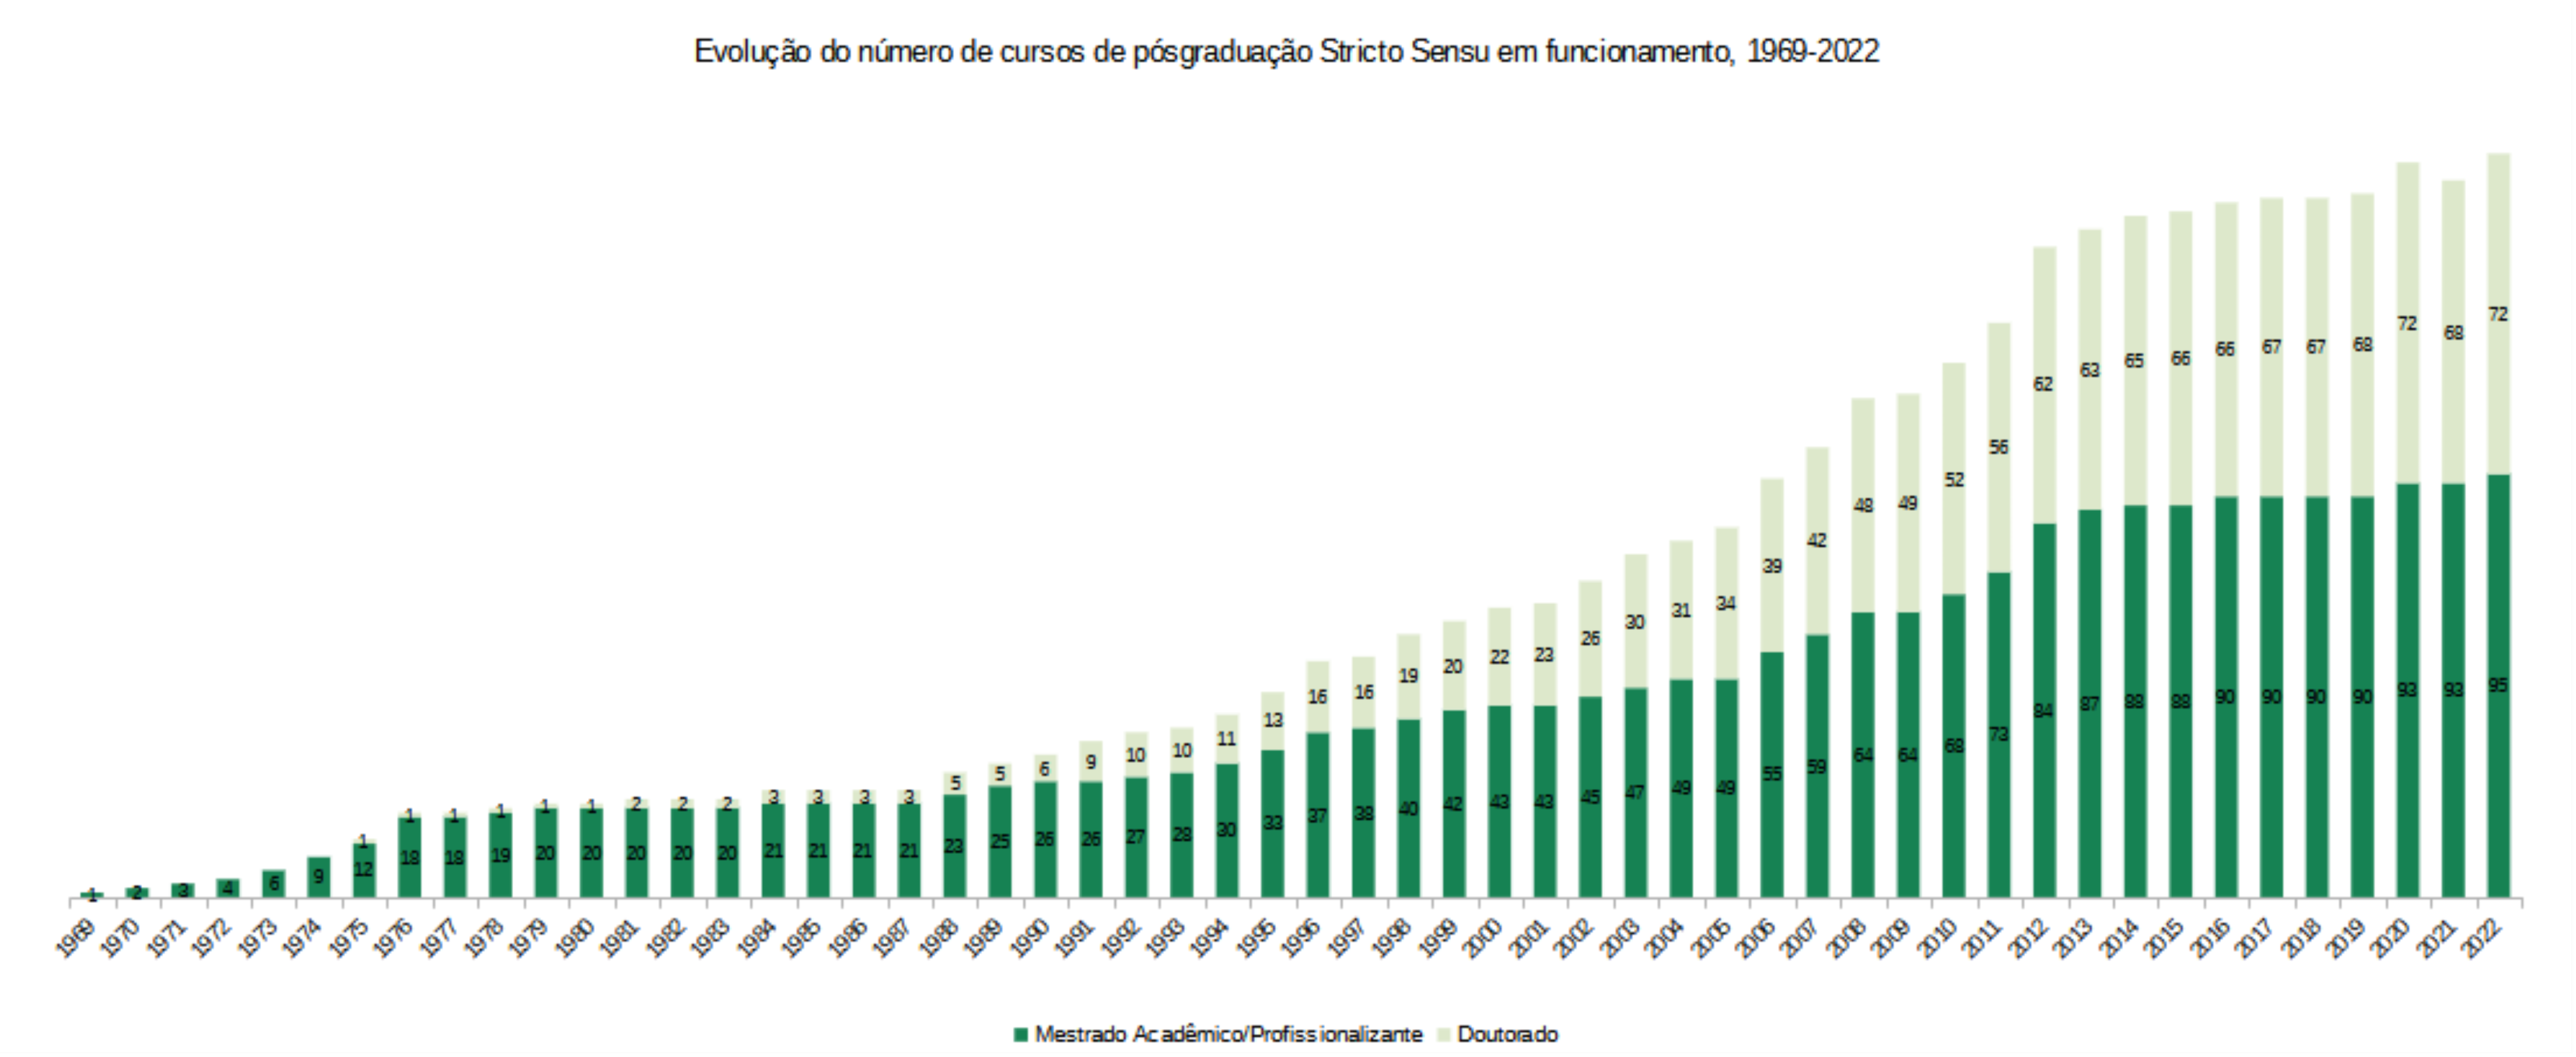 Total de alunos formados por período, UnB, 1969 a 2022